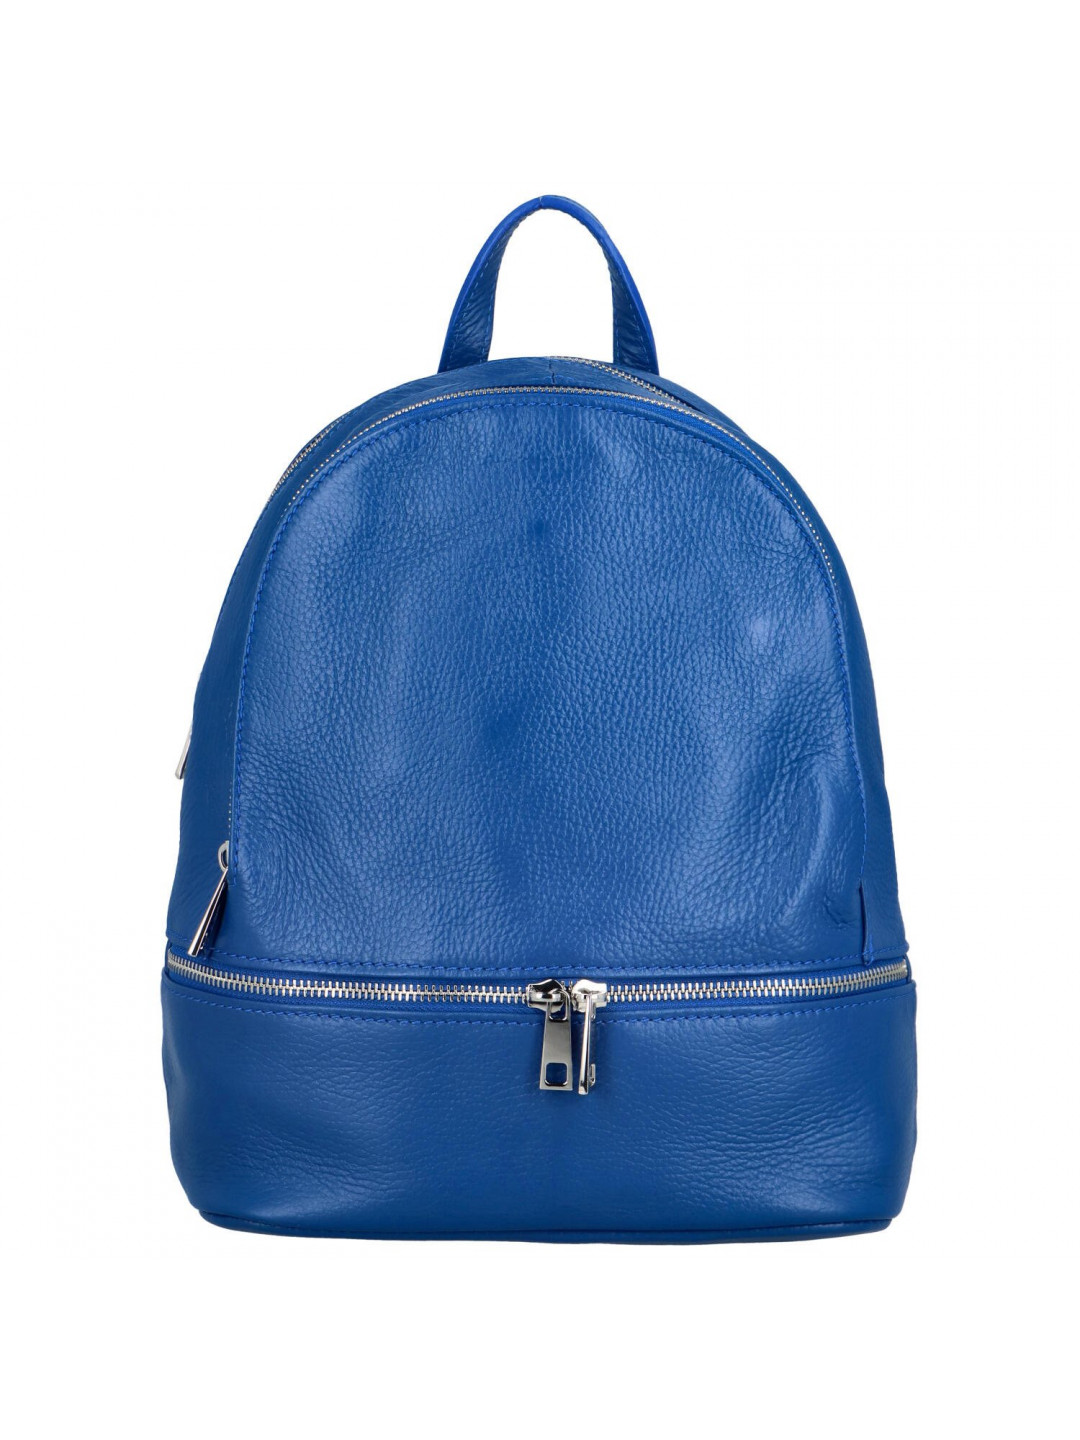 Pohodový dámský kožený batoh Elivo modrá